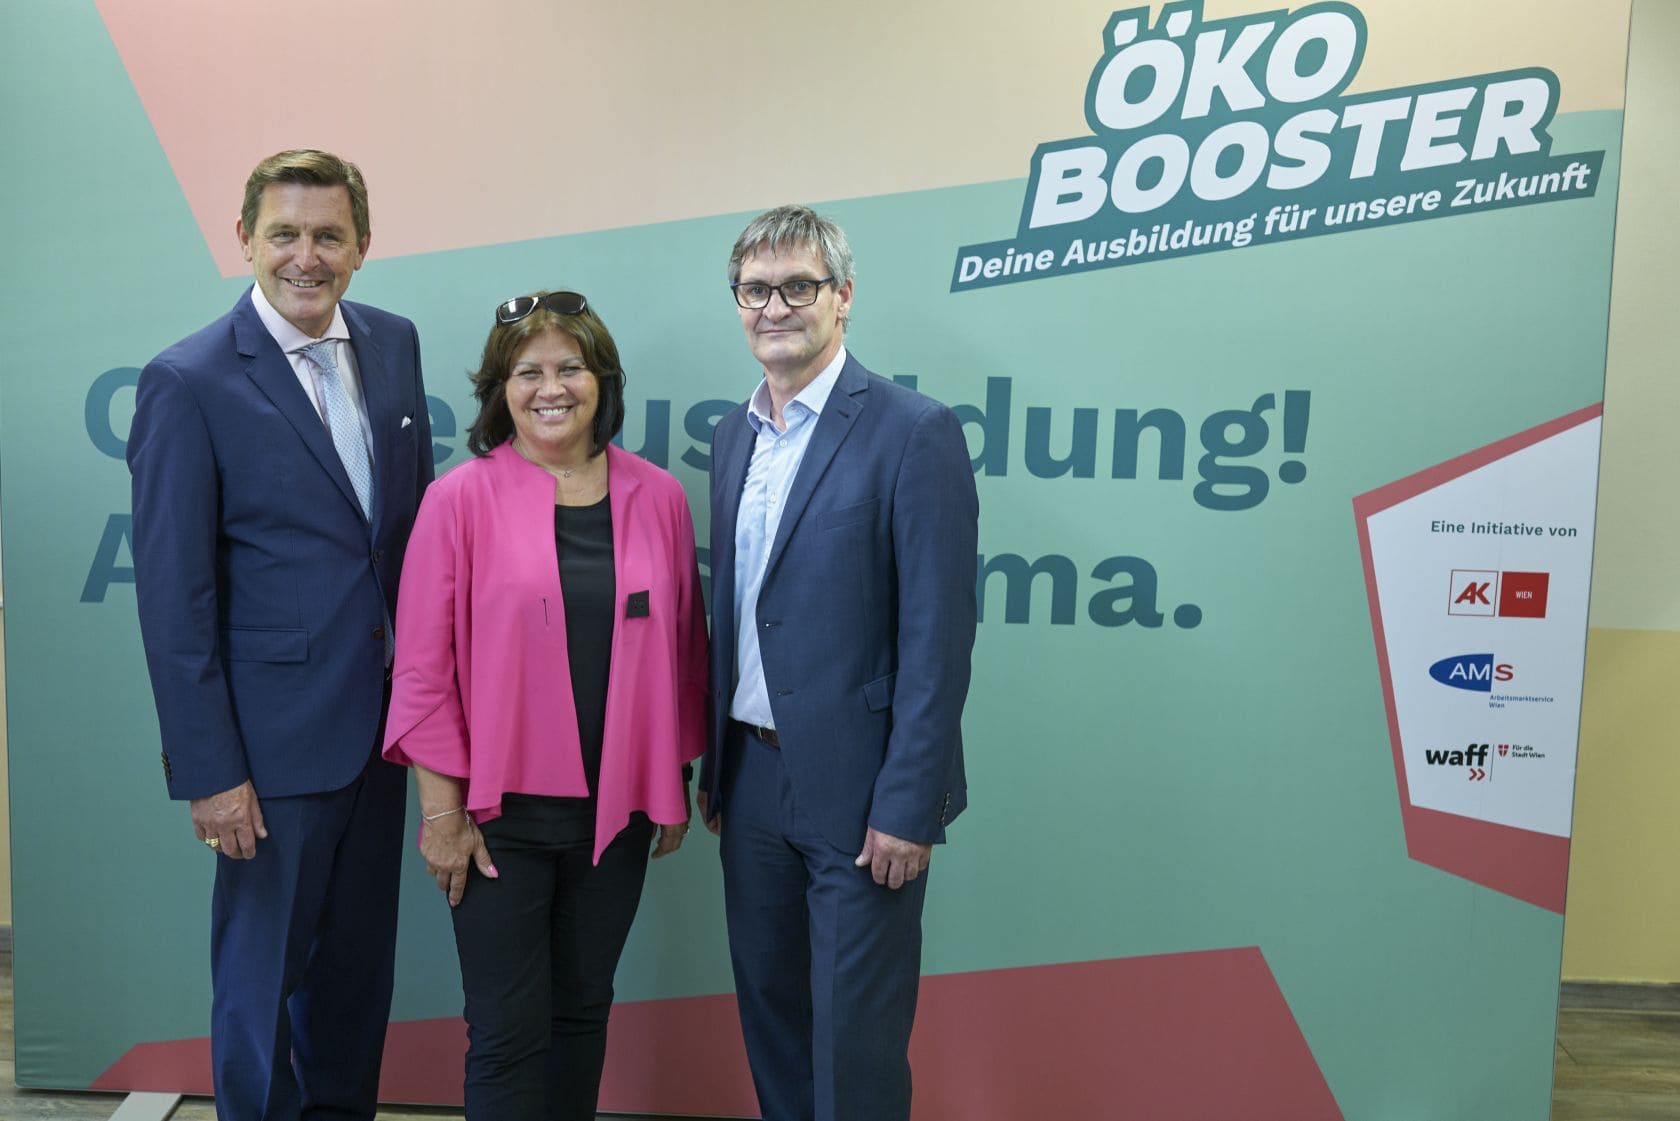 Peter Hanke, Renate Anderl und Winfried Göschl stehen vor einer Rückwand, wo ÖKO Booster draufsteht